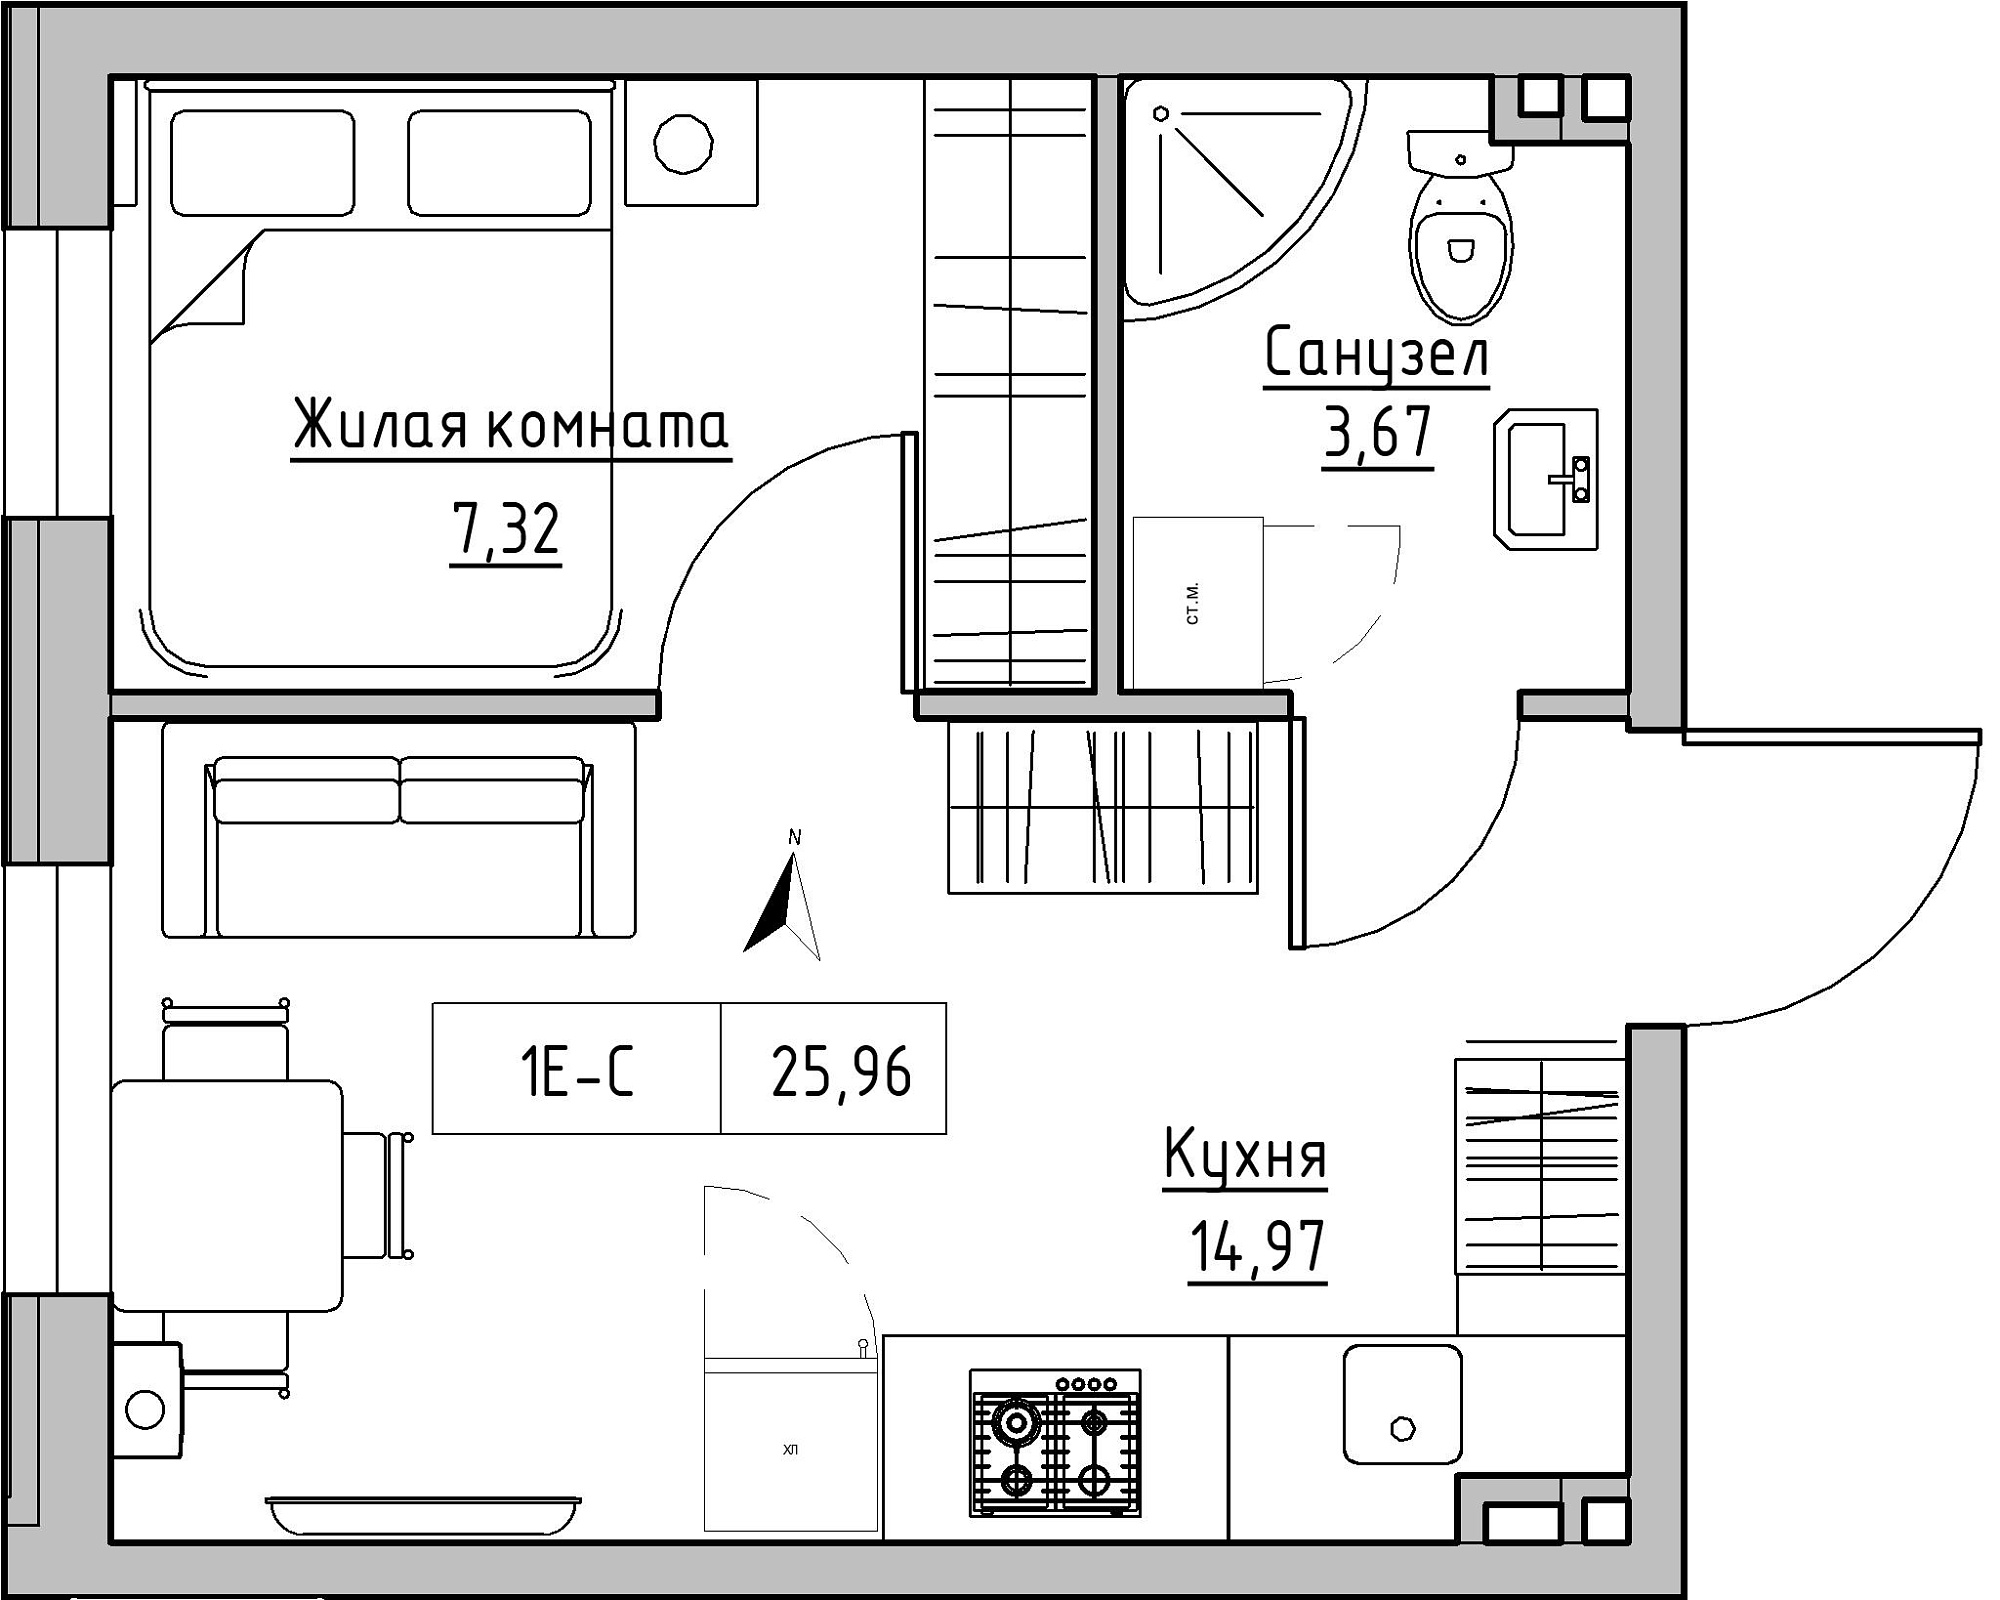 Планировка 1-к квартира площей 25.96м2, KS-024-01/0012.